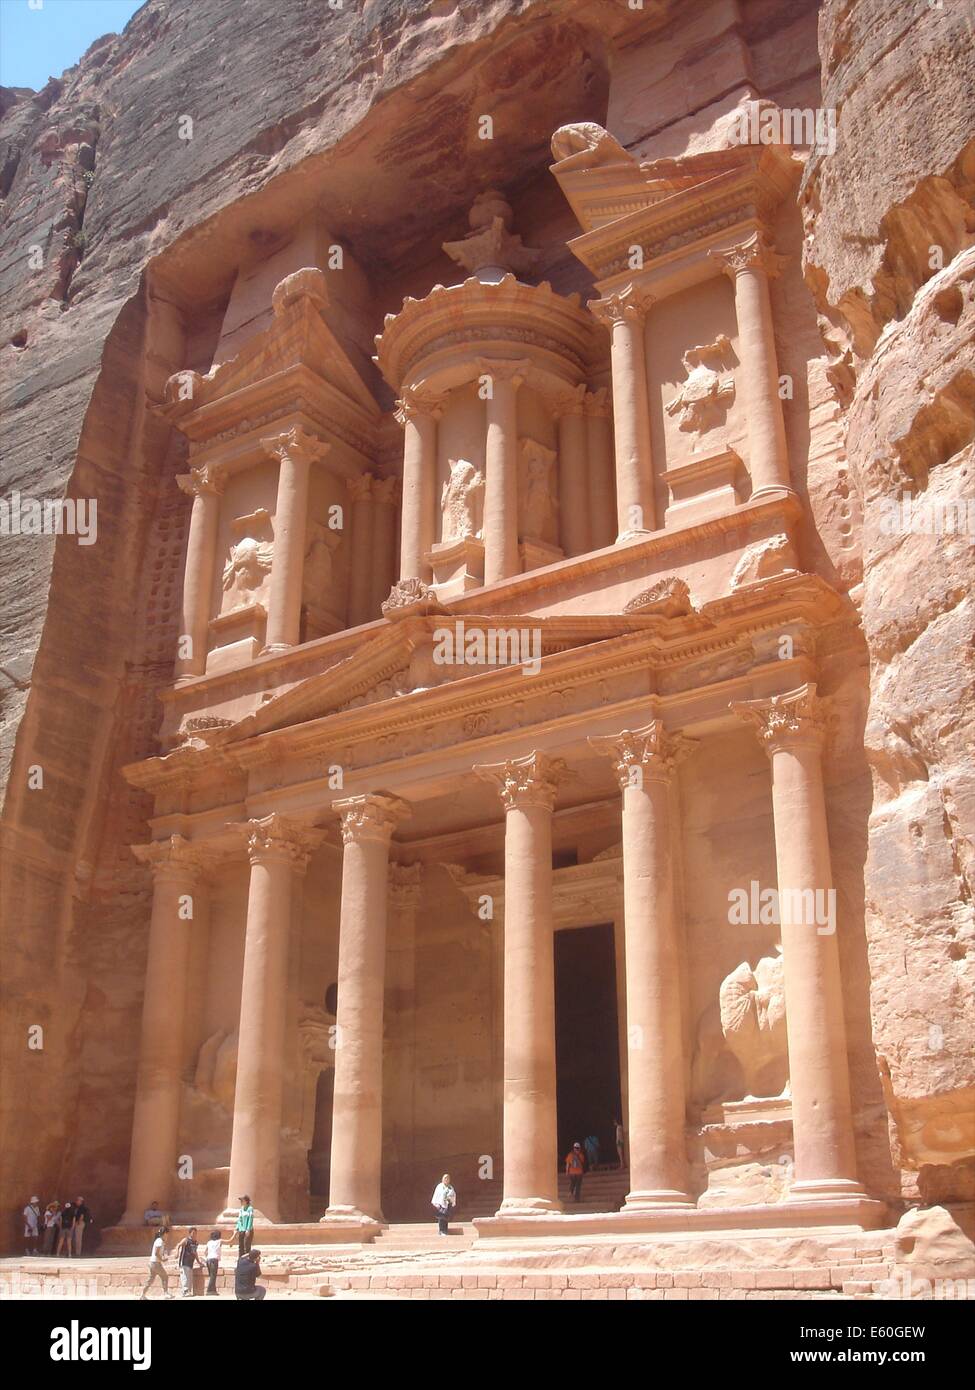 El Khasneh (Tesoro) di Petra, una delle sette meraviglie del mondo, in Giordania Foto Stock